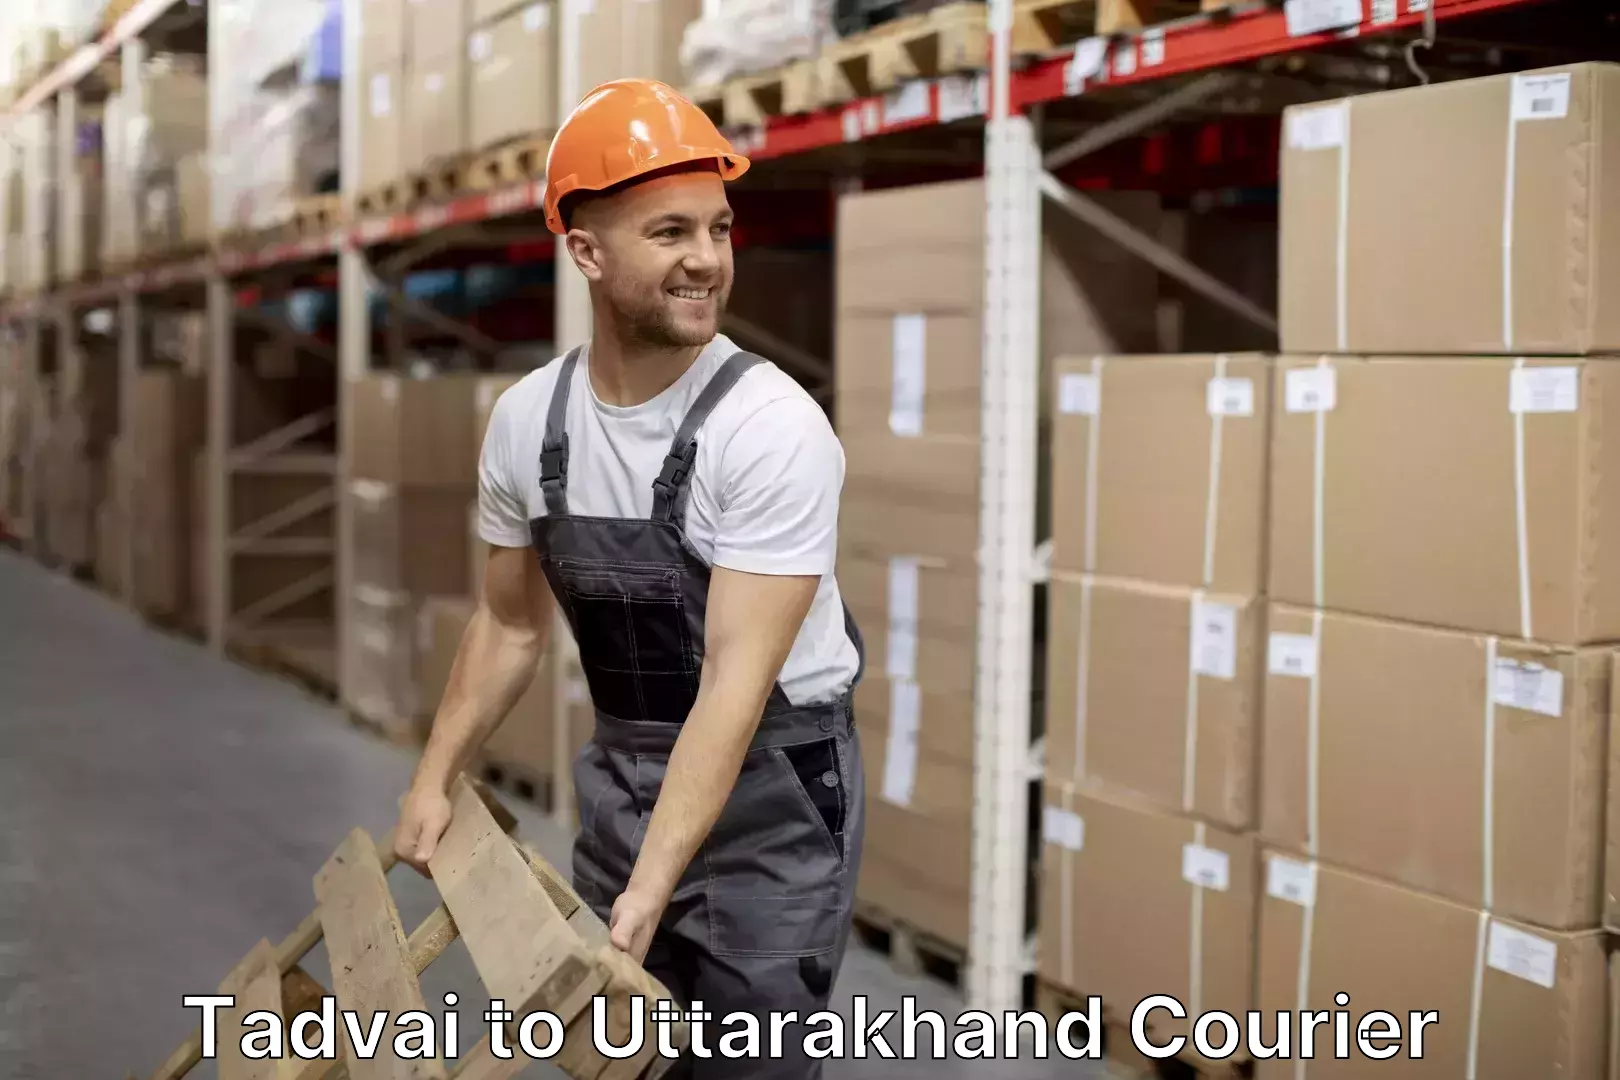 Efficient moving company Tadvai to Uttarakhand